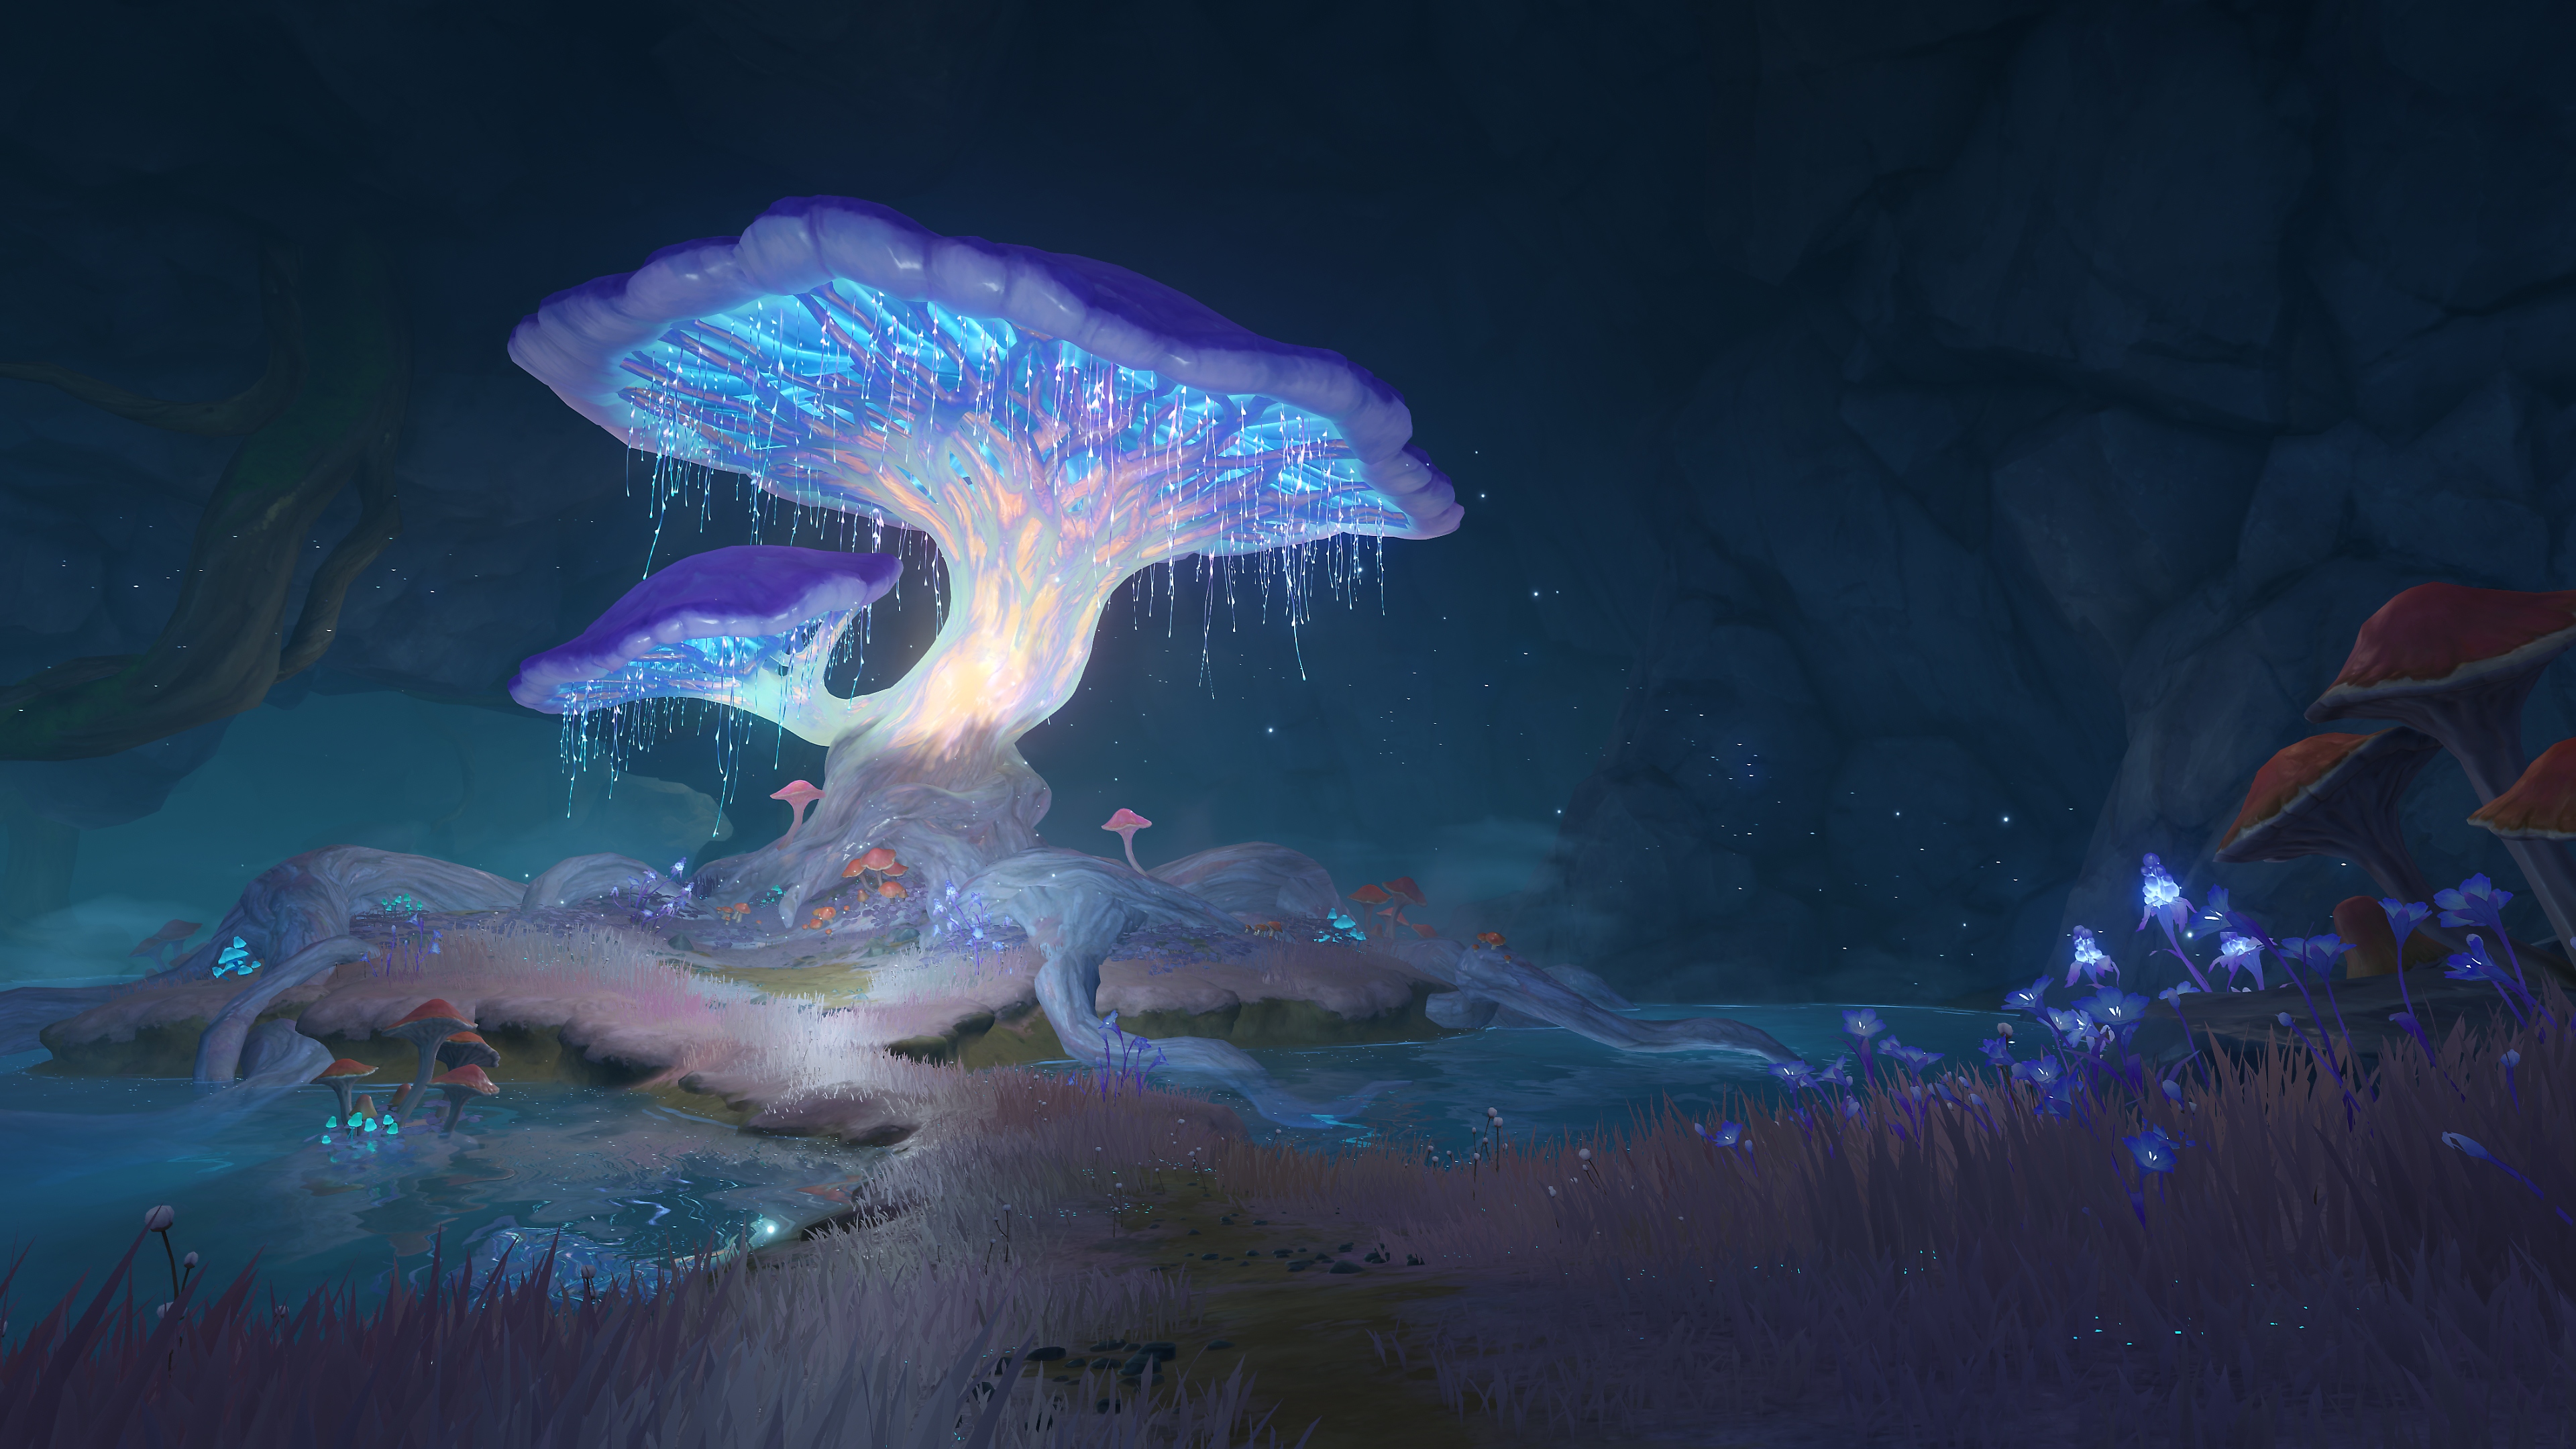 Genshin Impact : Capture d'écran de la mise à jour 2.6 représentant un champignon lumineux dans une grotte ou un lieu souterrain